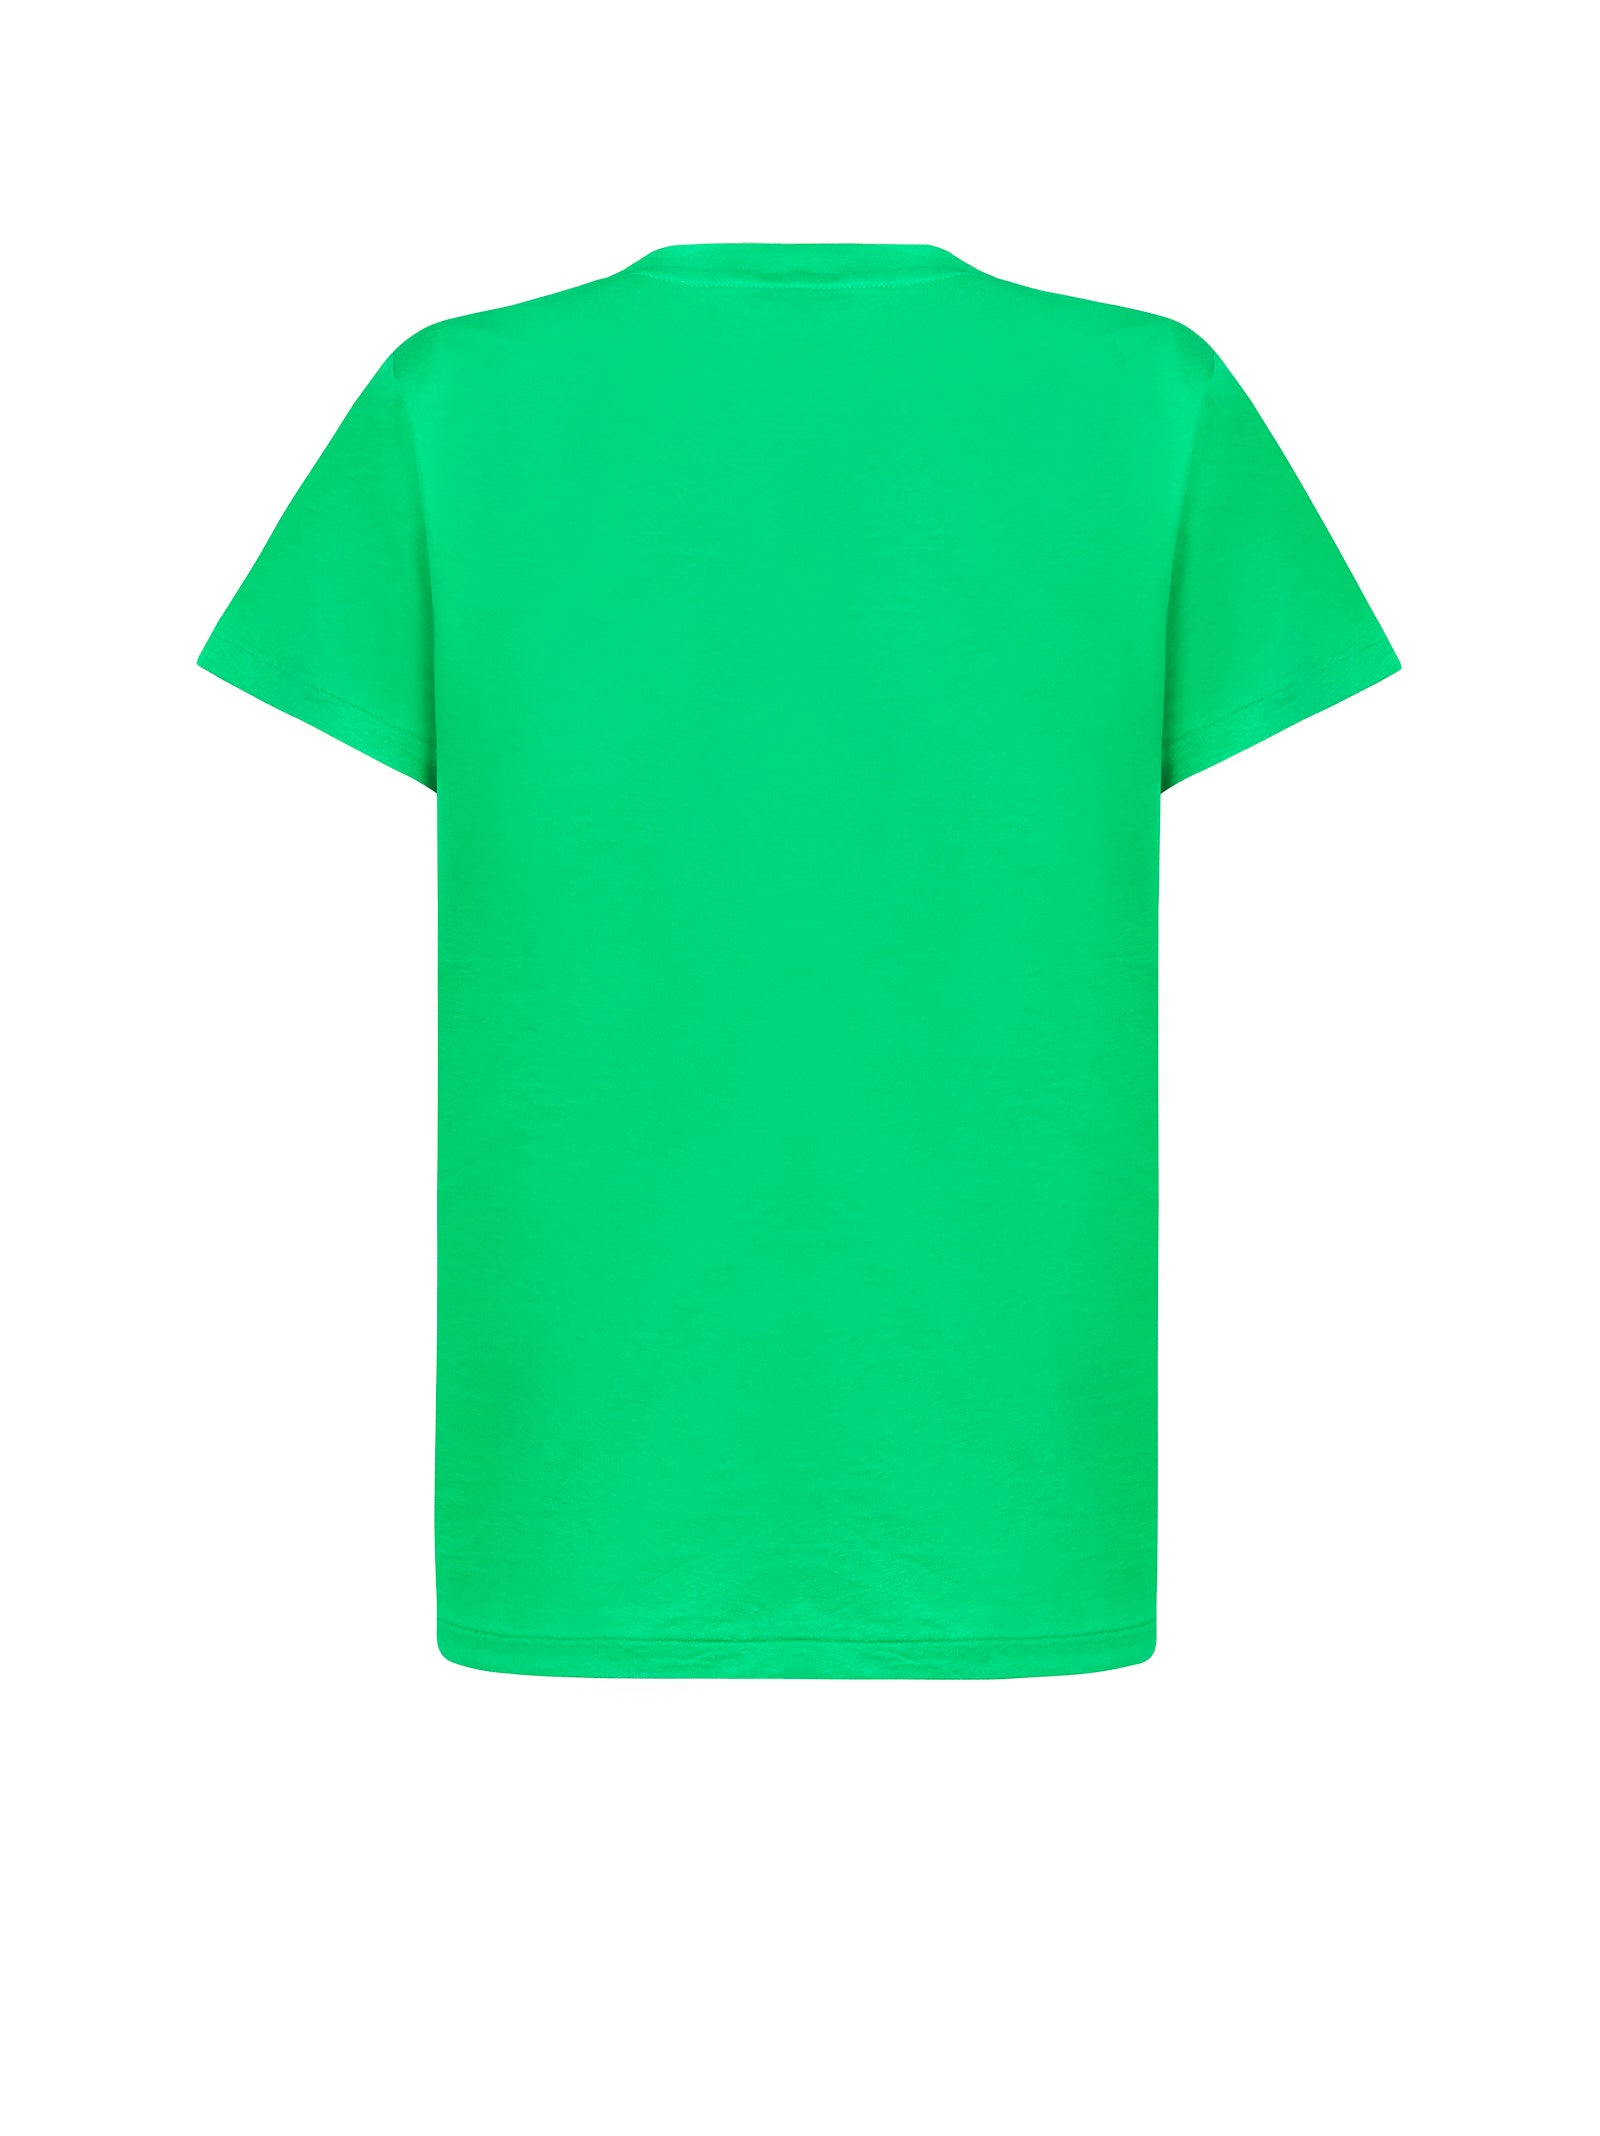 T-shirt POLO RALPH LAUREN
Green